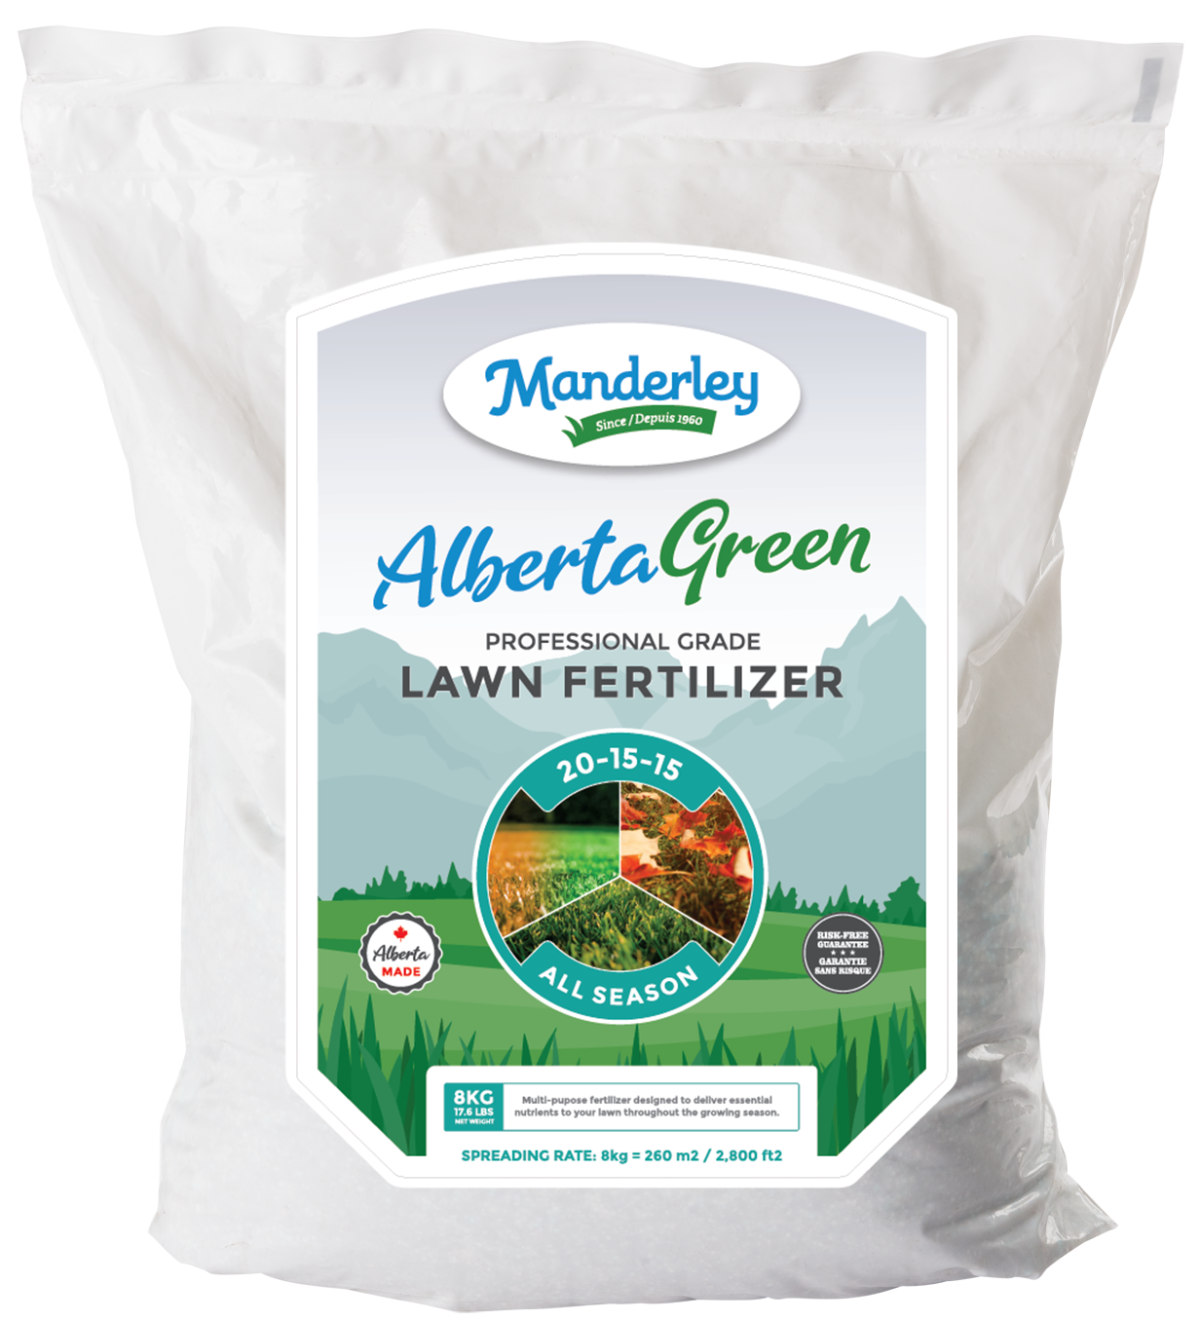 Manderley All Season Lawn Fertilizer Professional Grade